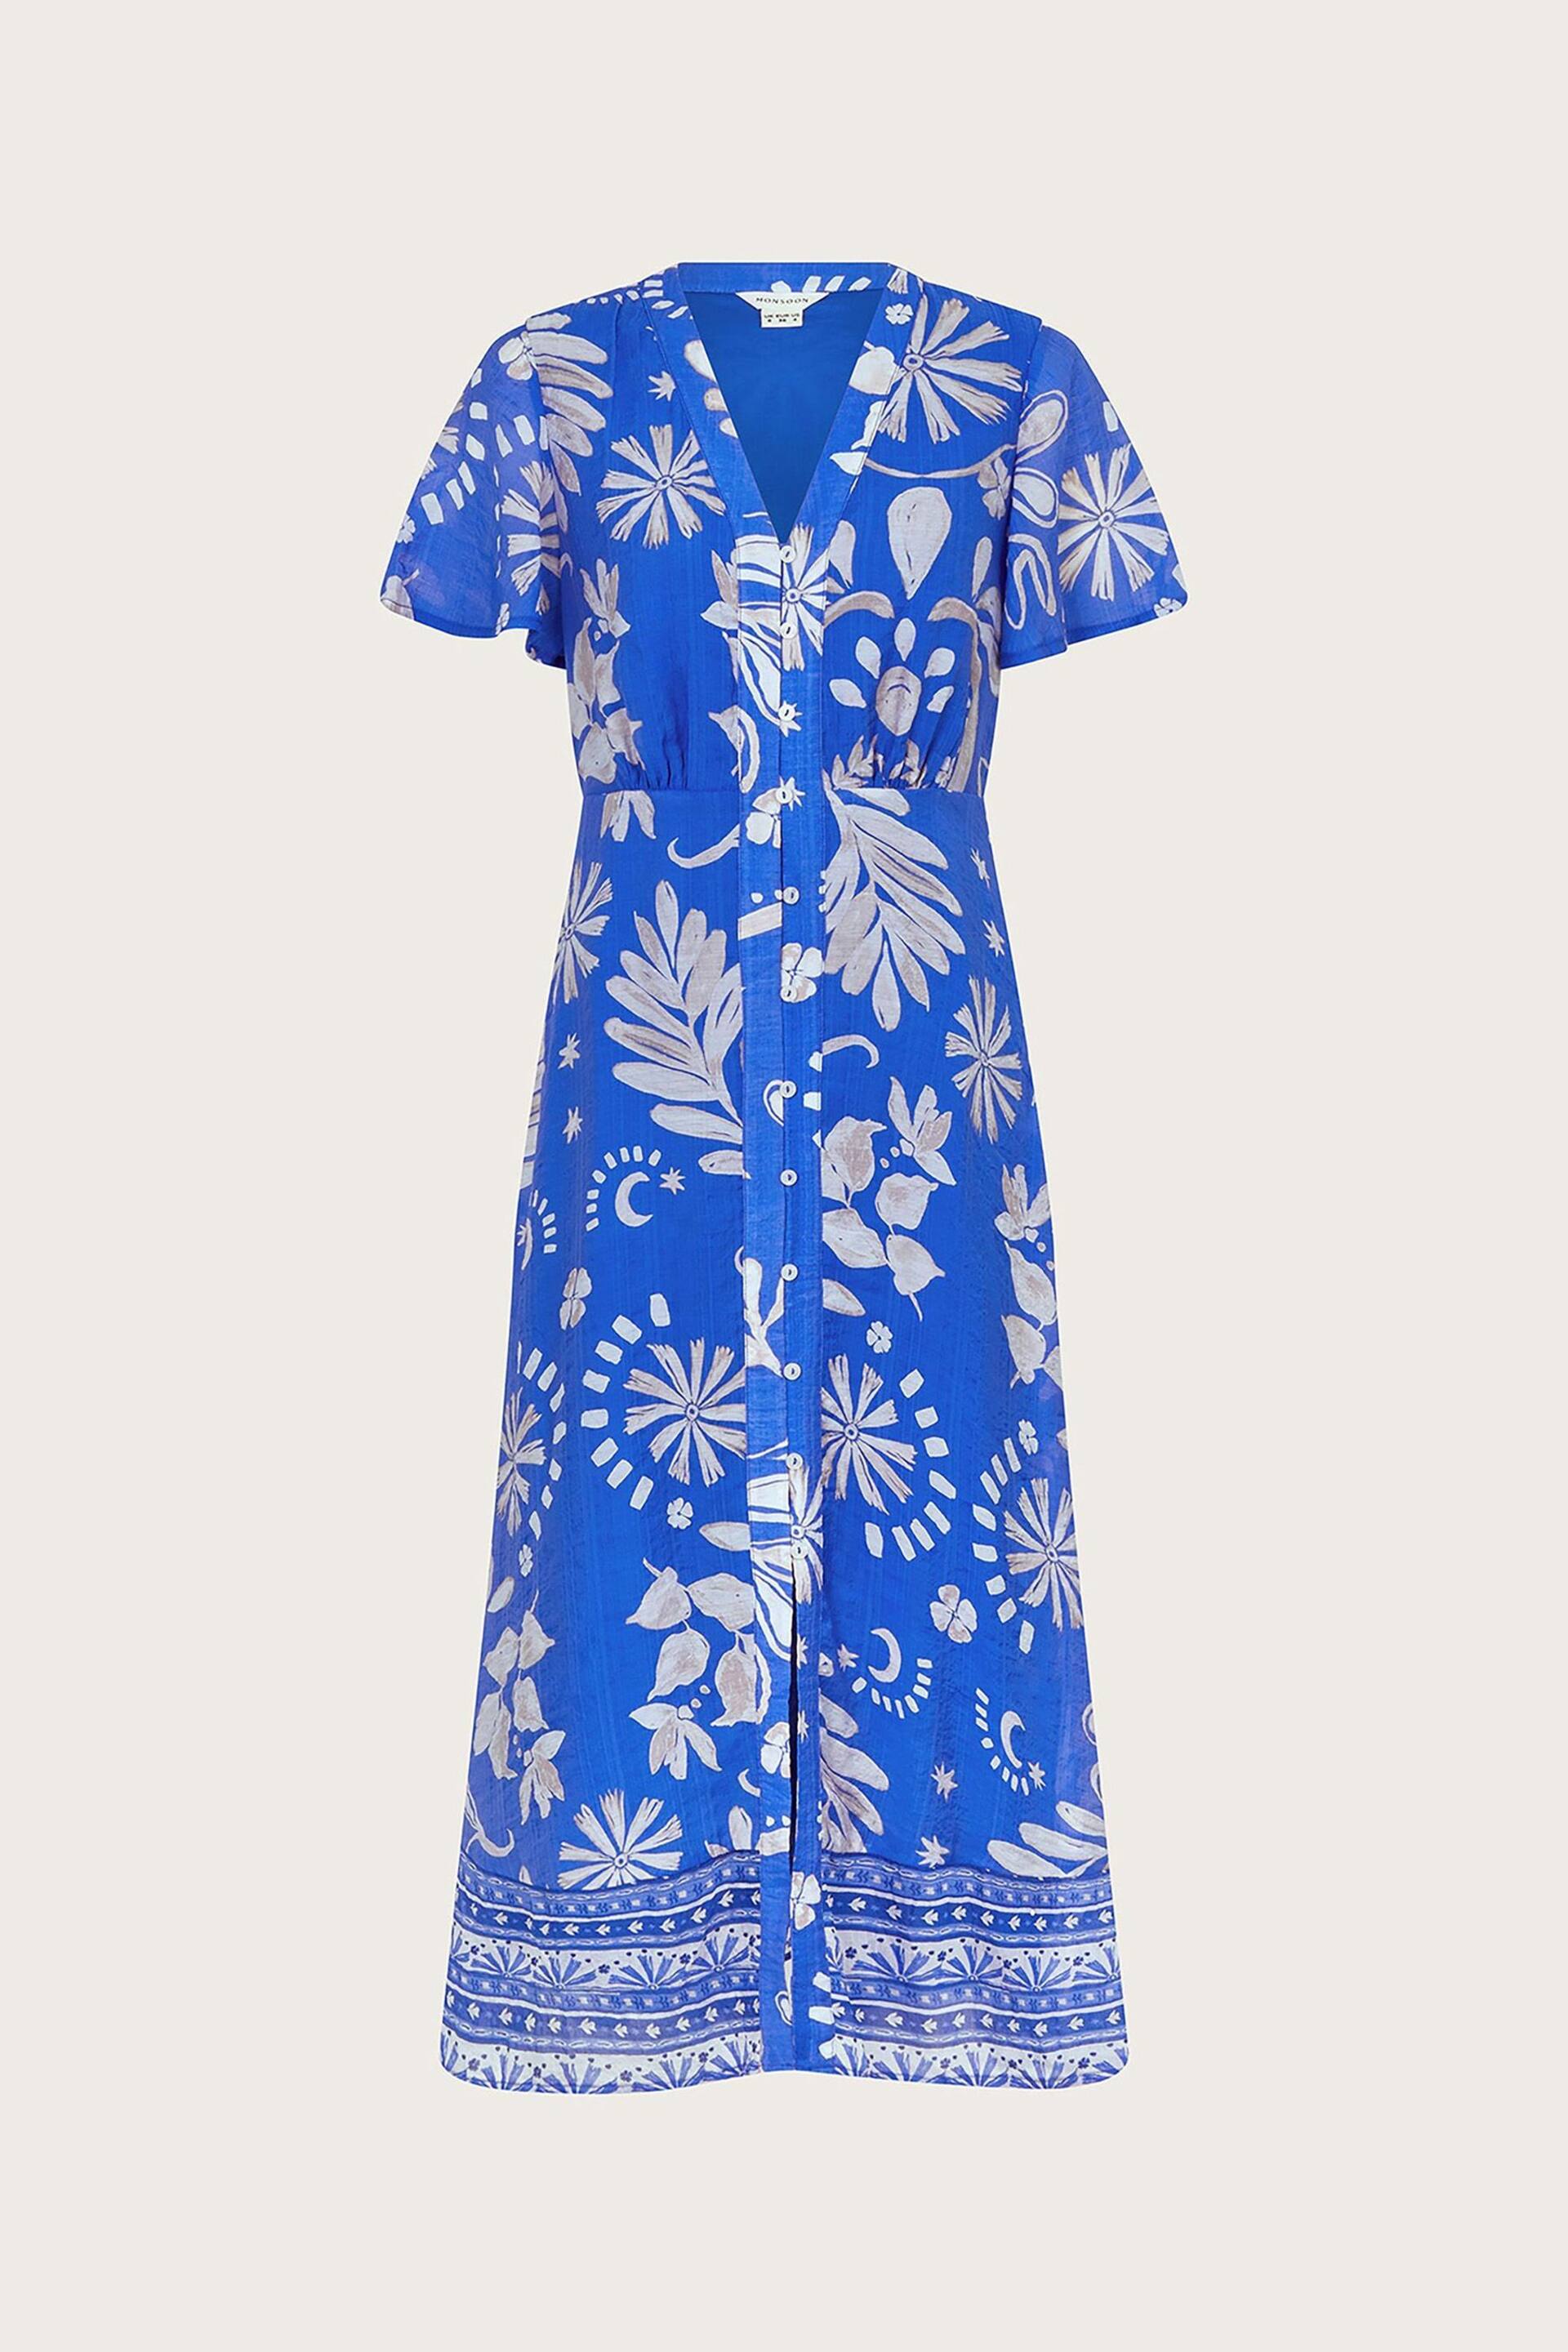 Monsoon Blue Cleo Tea Dress - Image 5 of 5